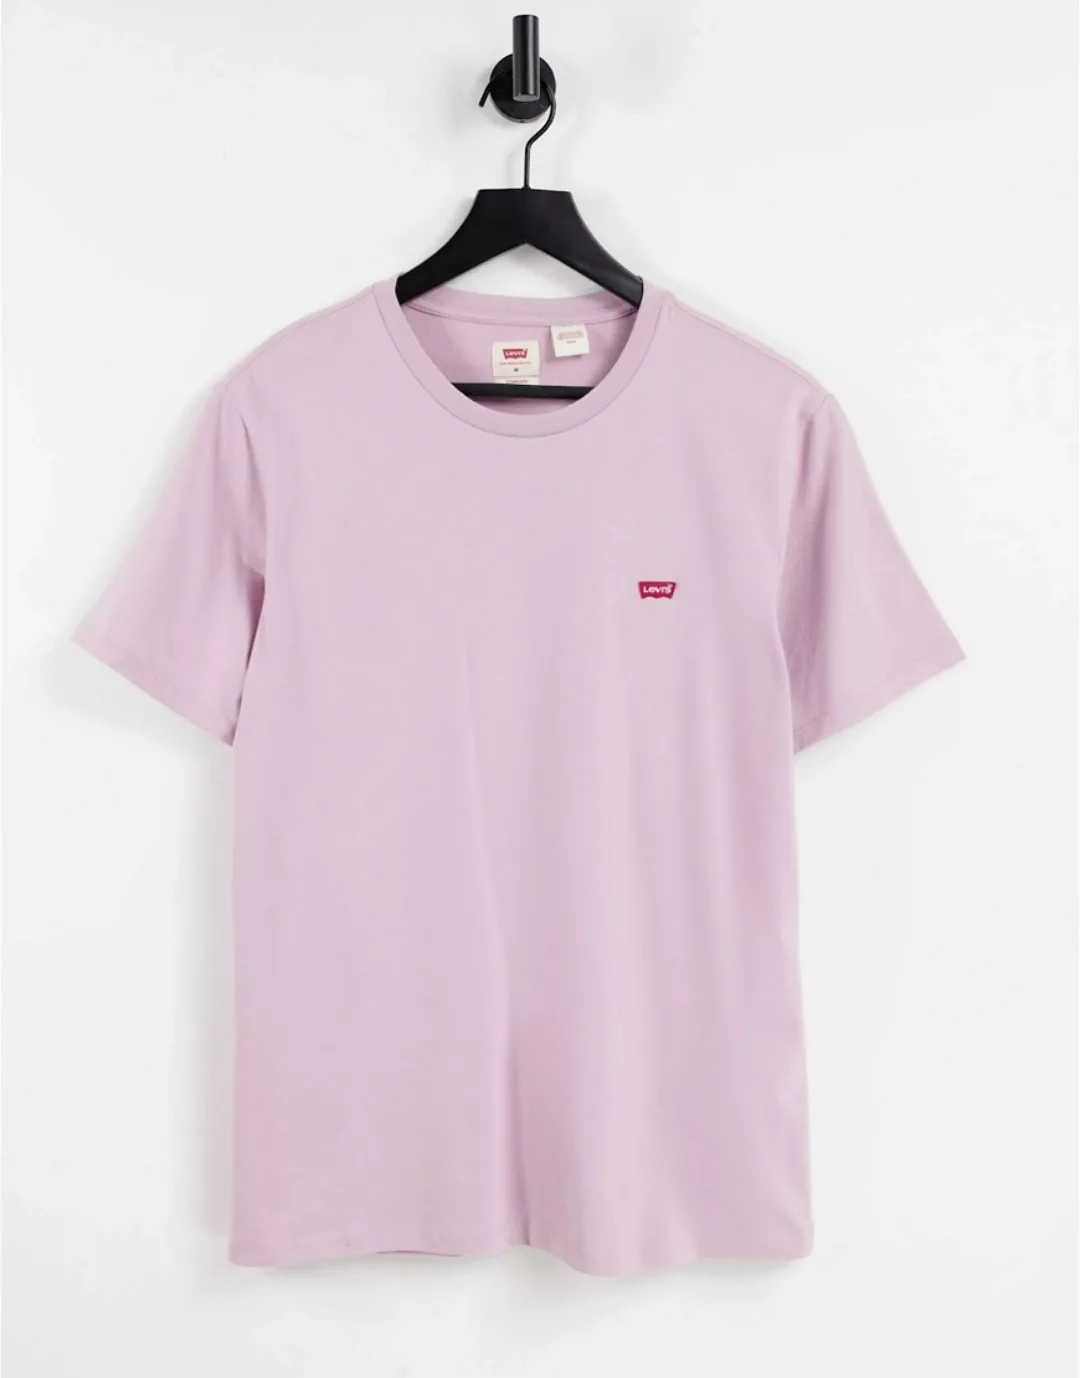 Levi's – Original – T-Shirt mit Batwing-Logo in Flieder-Lila günstig online kaufen